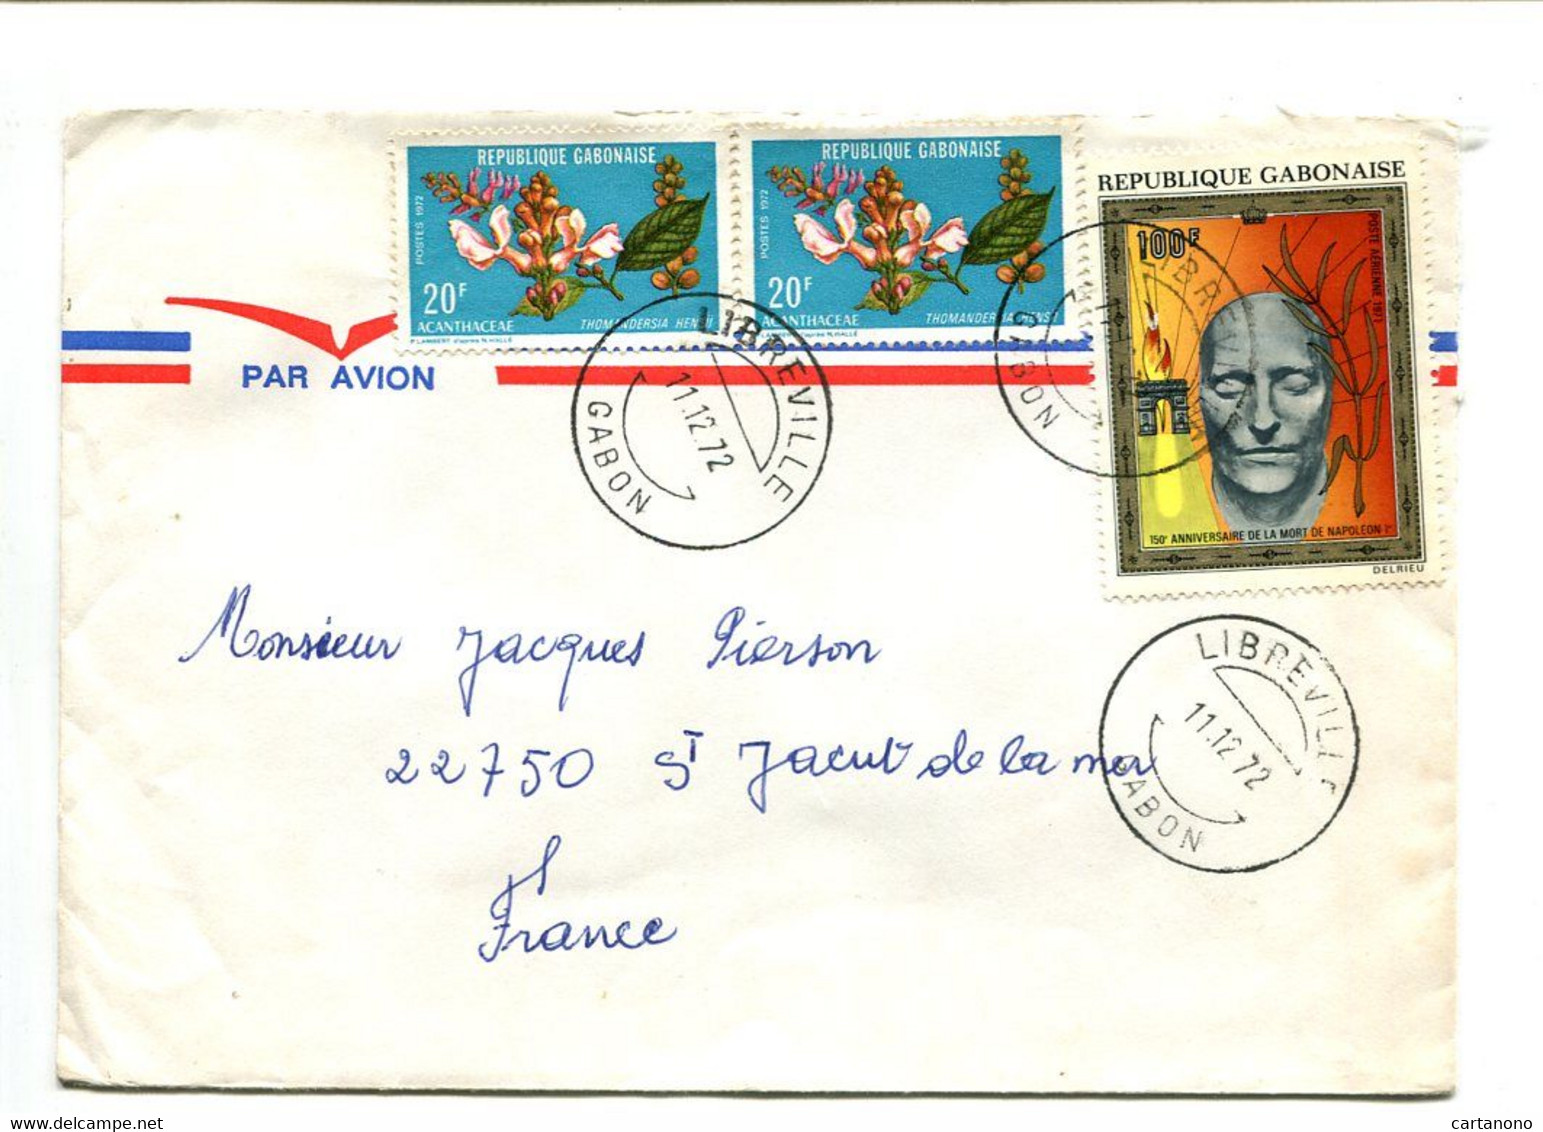 GABON Libreville 1972 - Affranchissement Sur Lettre Par Avion - Napoléon / Fleurs - Napoleone